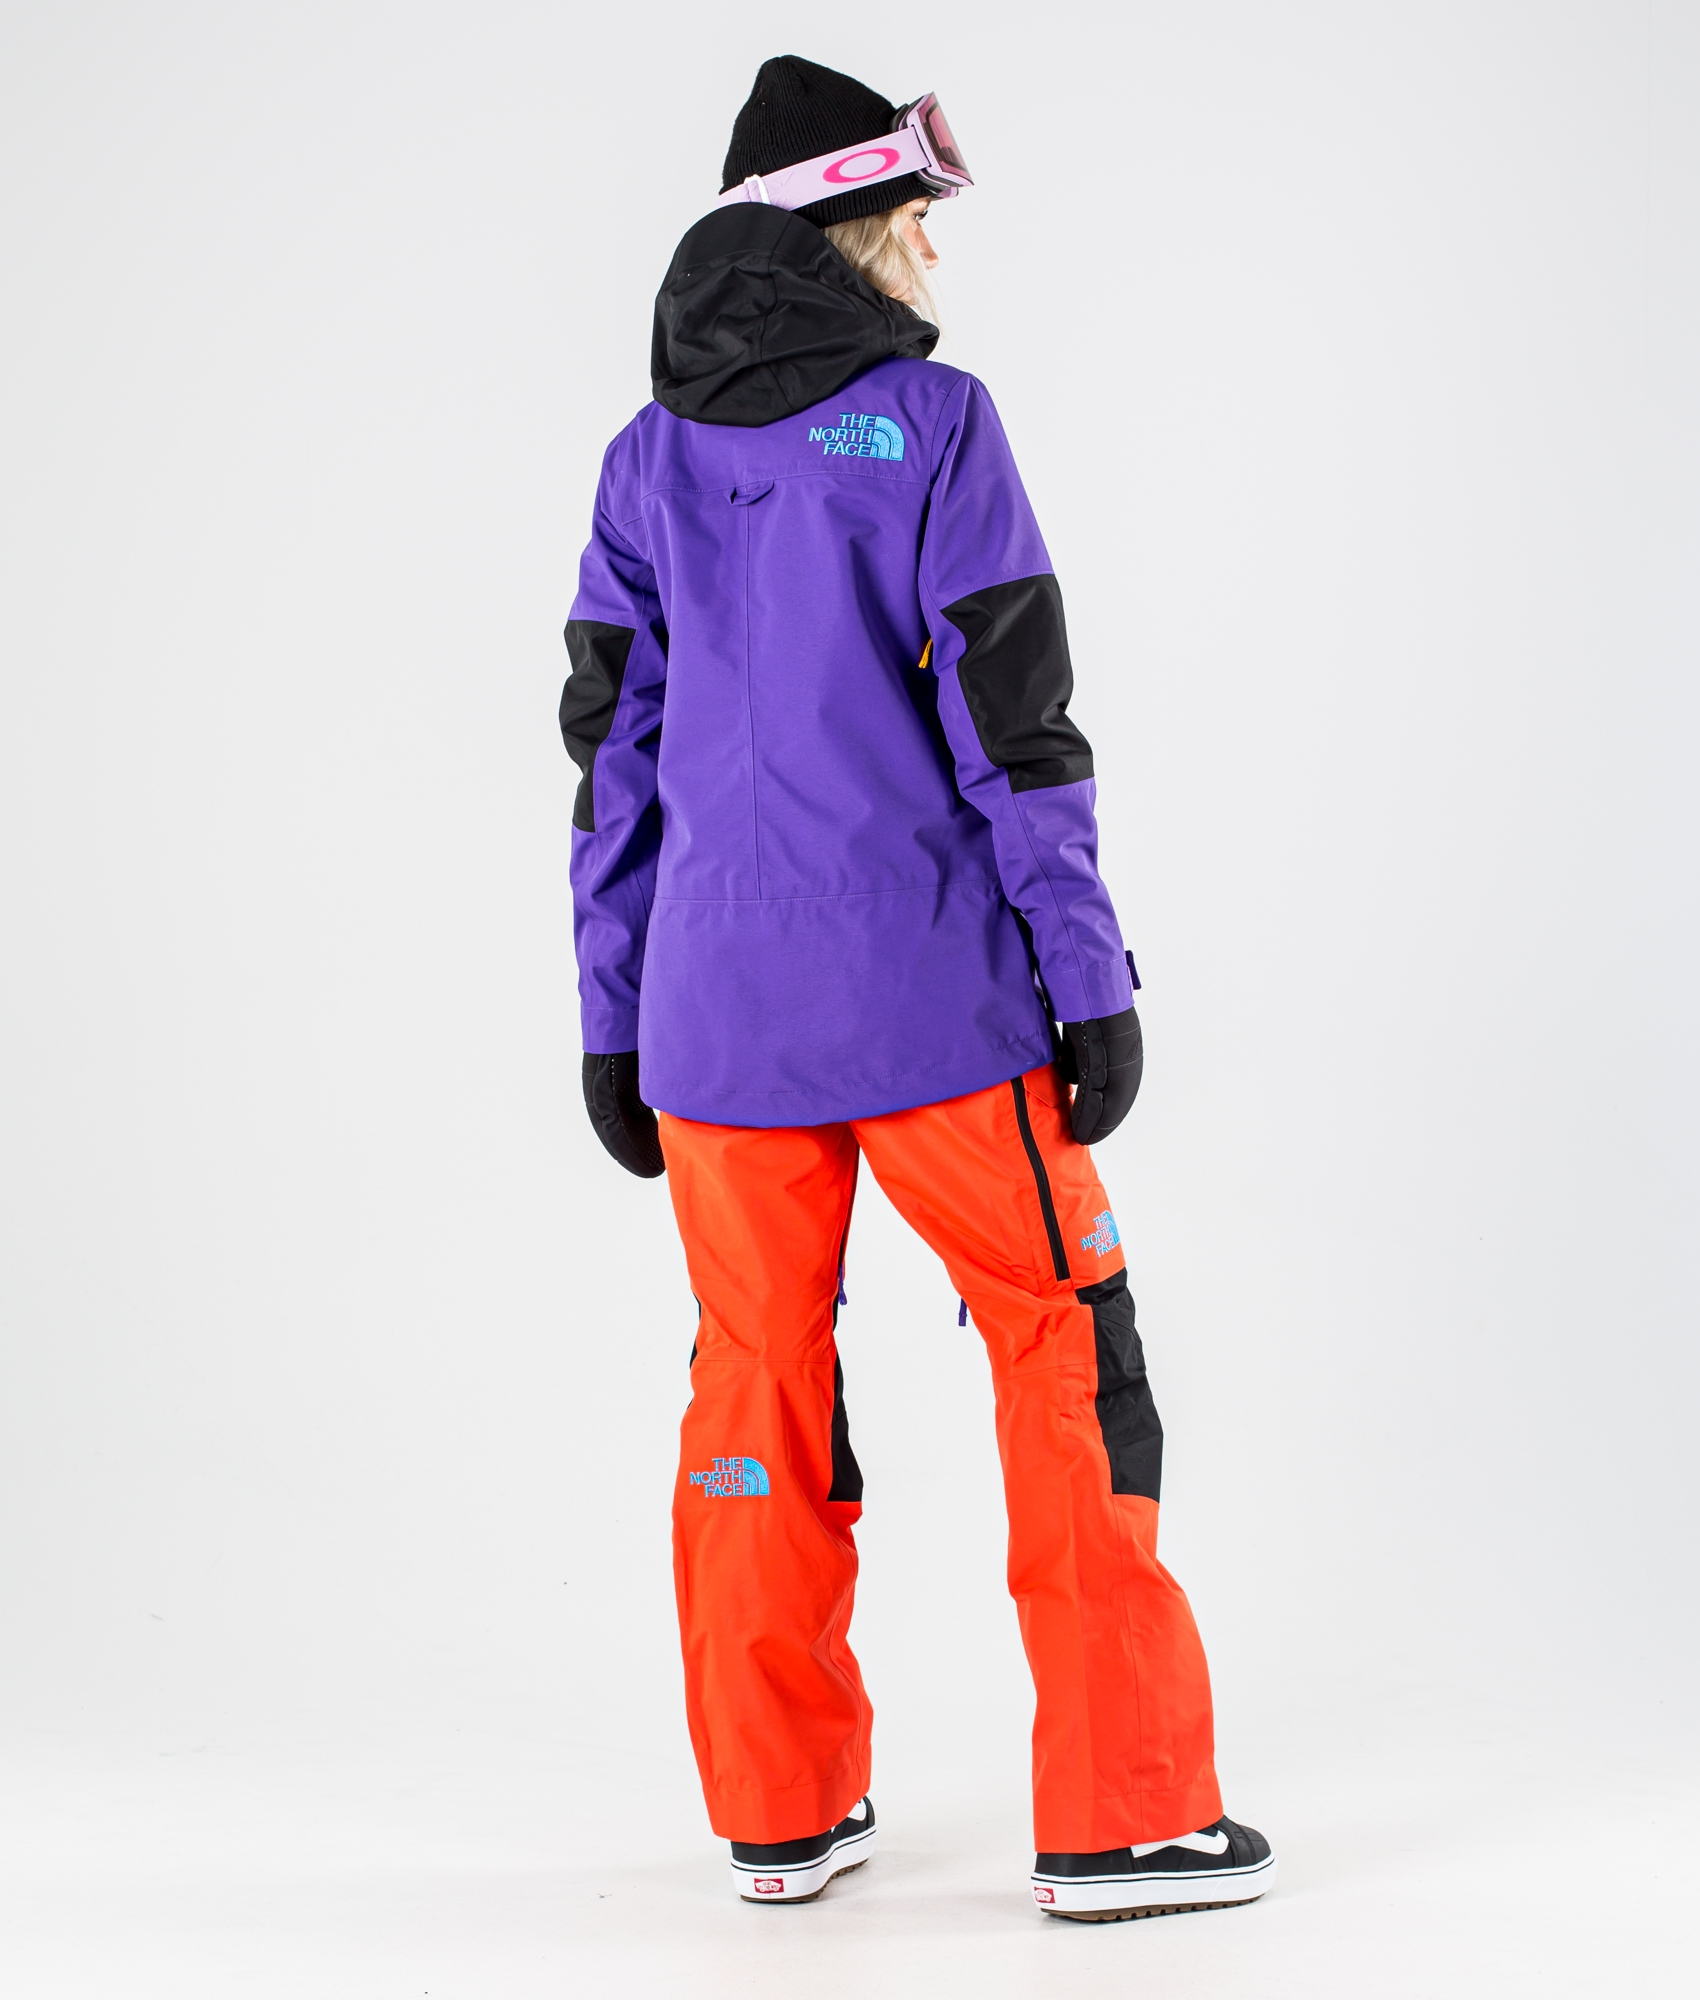 north face ski jacket and pants